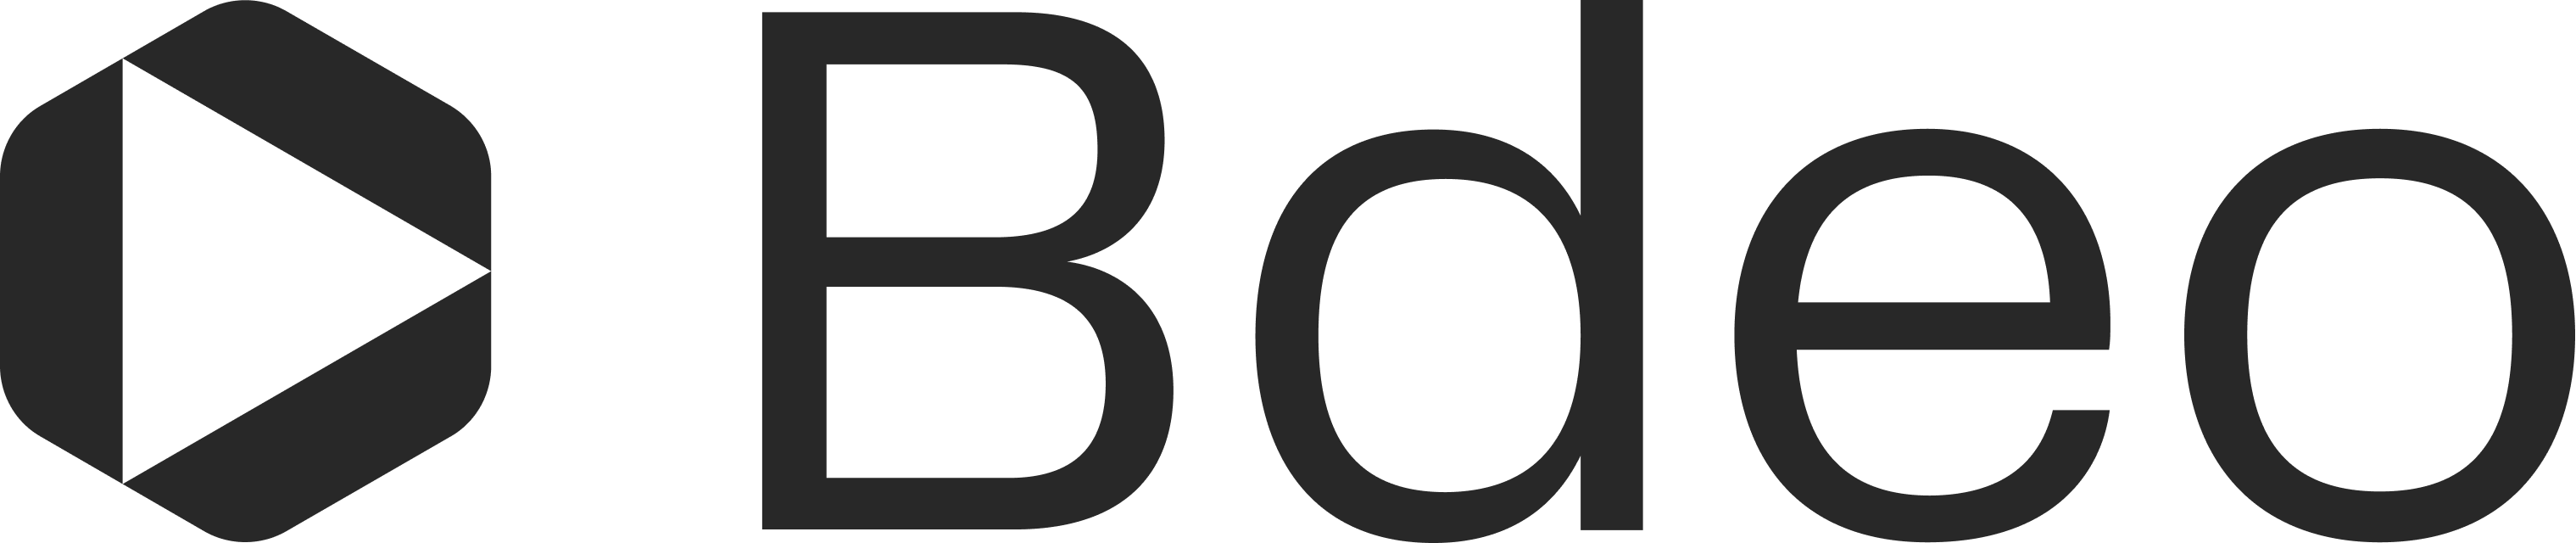 Bdeo Logo